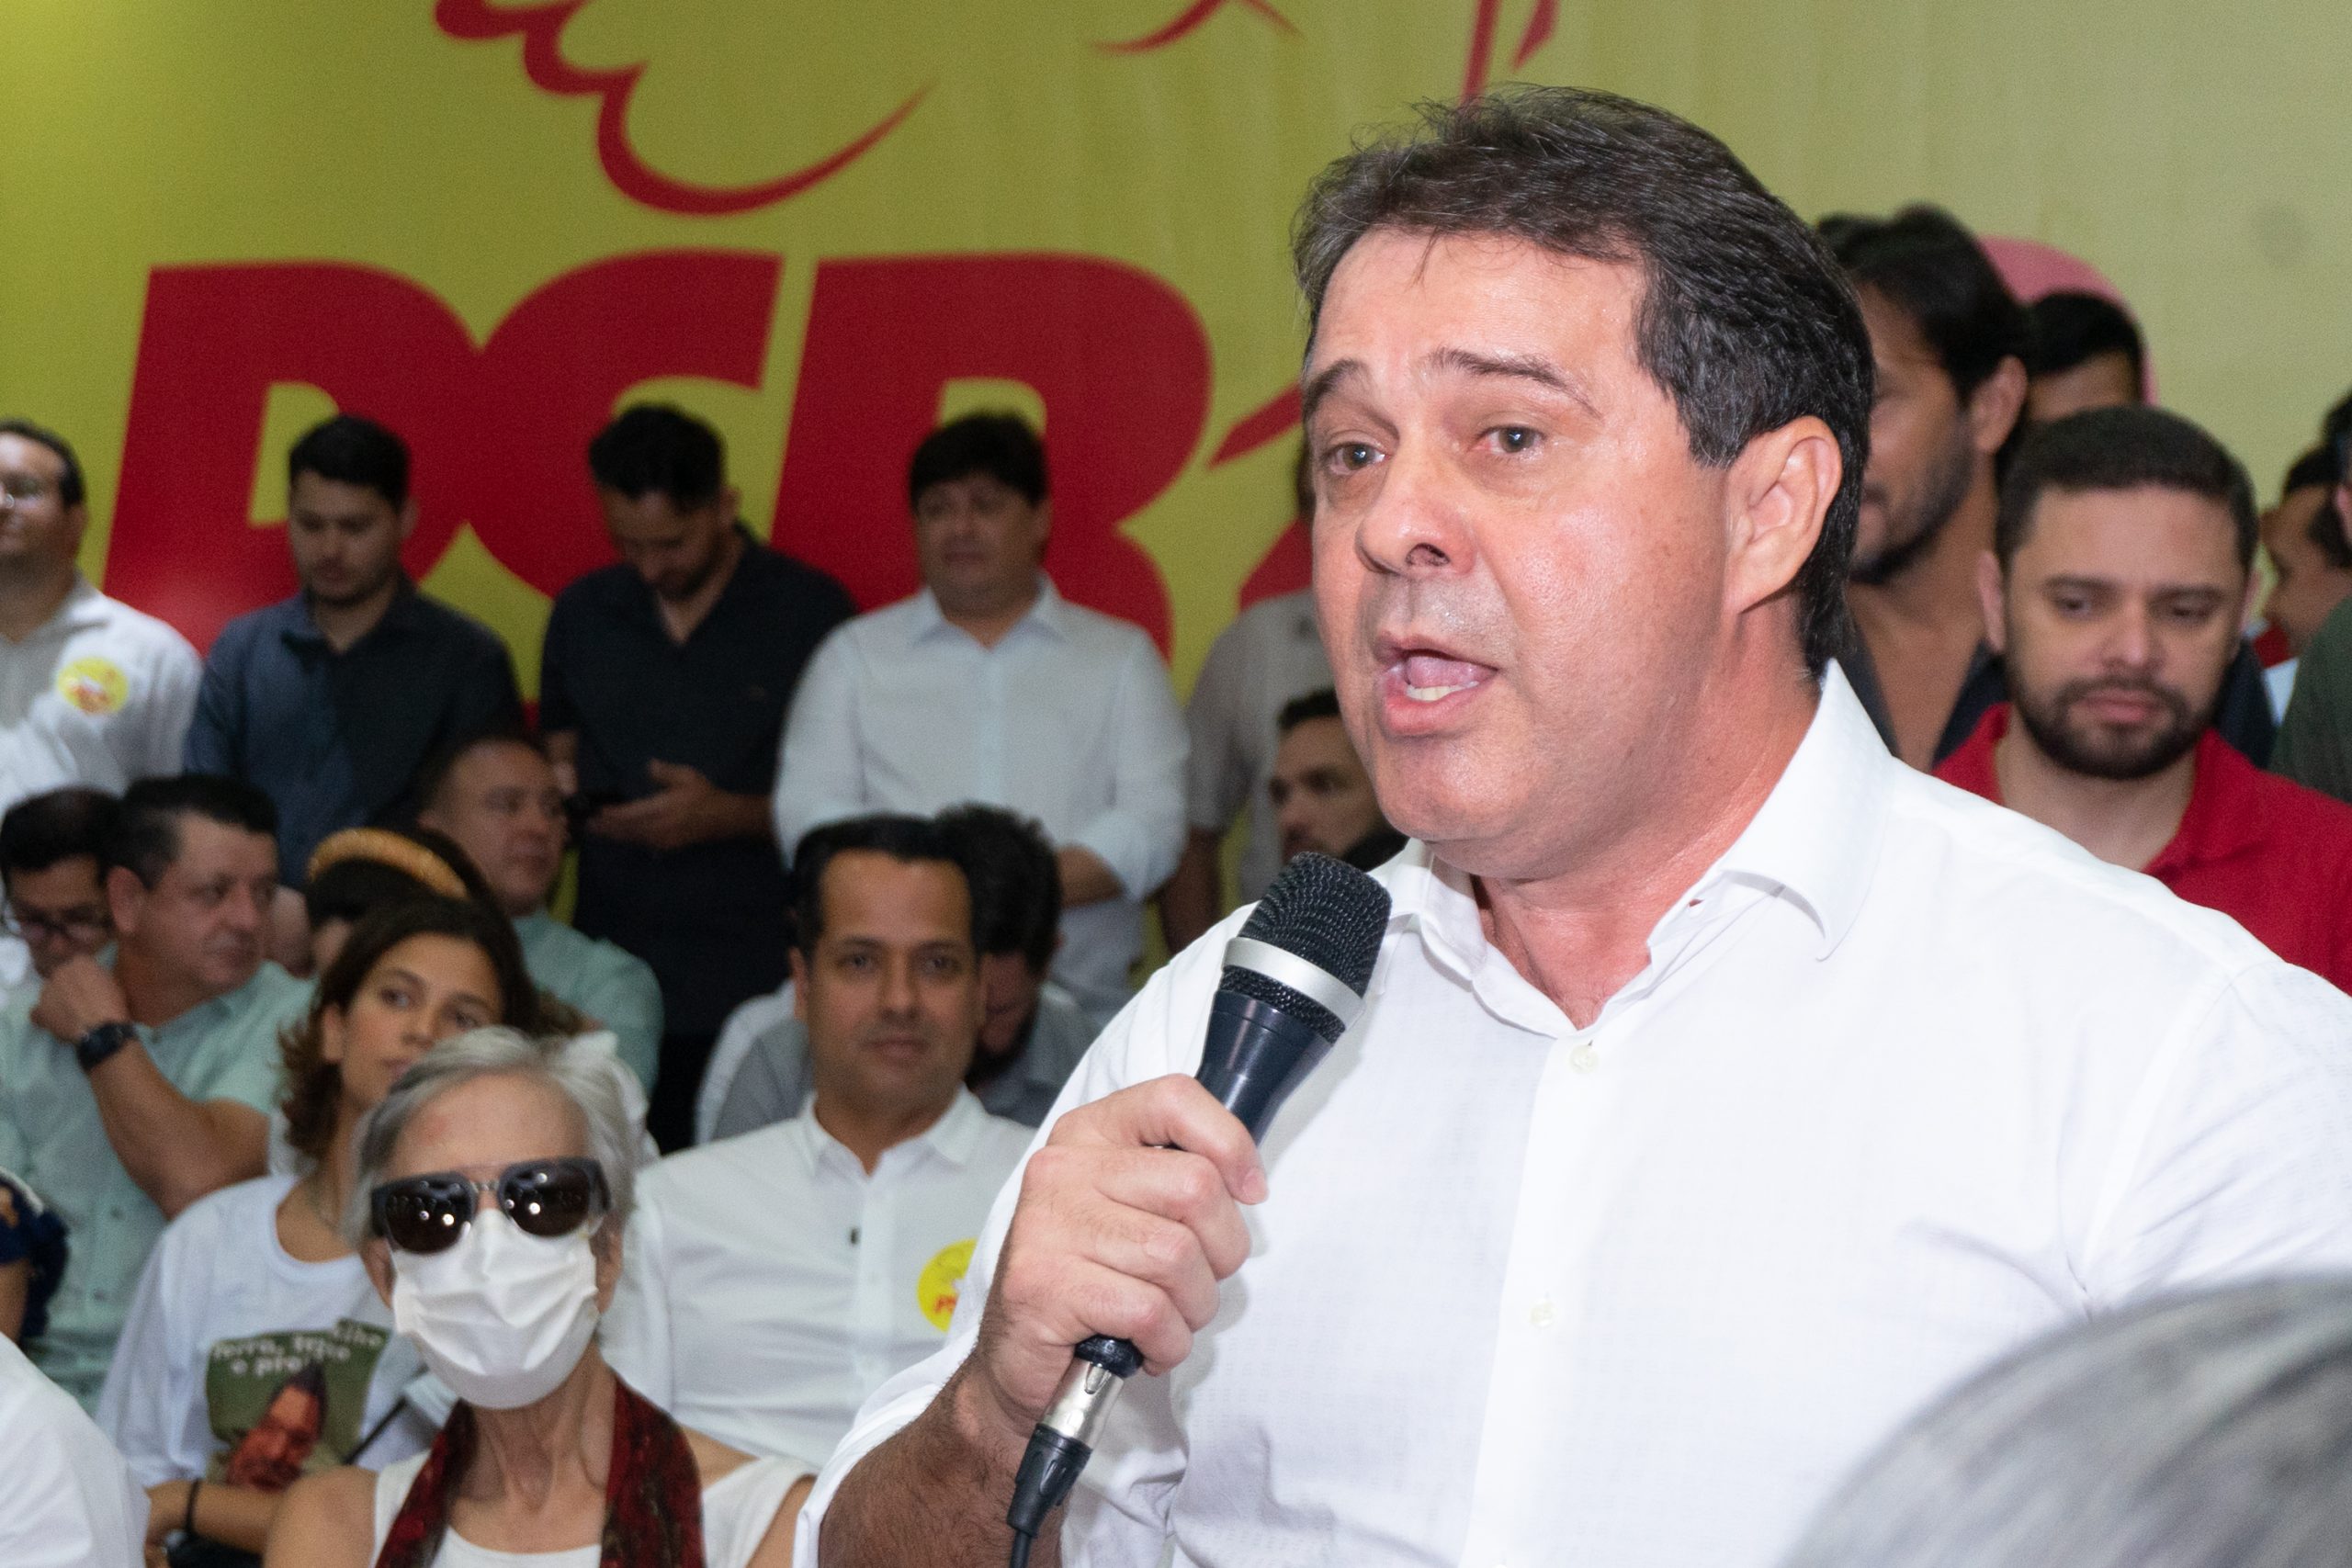 Evandro Leitão rebate críticas de Roberto Cláudio: “Lamento que ainda não tenha aceitado o resultado da última eleição”